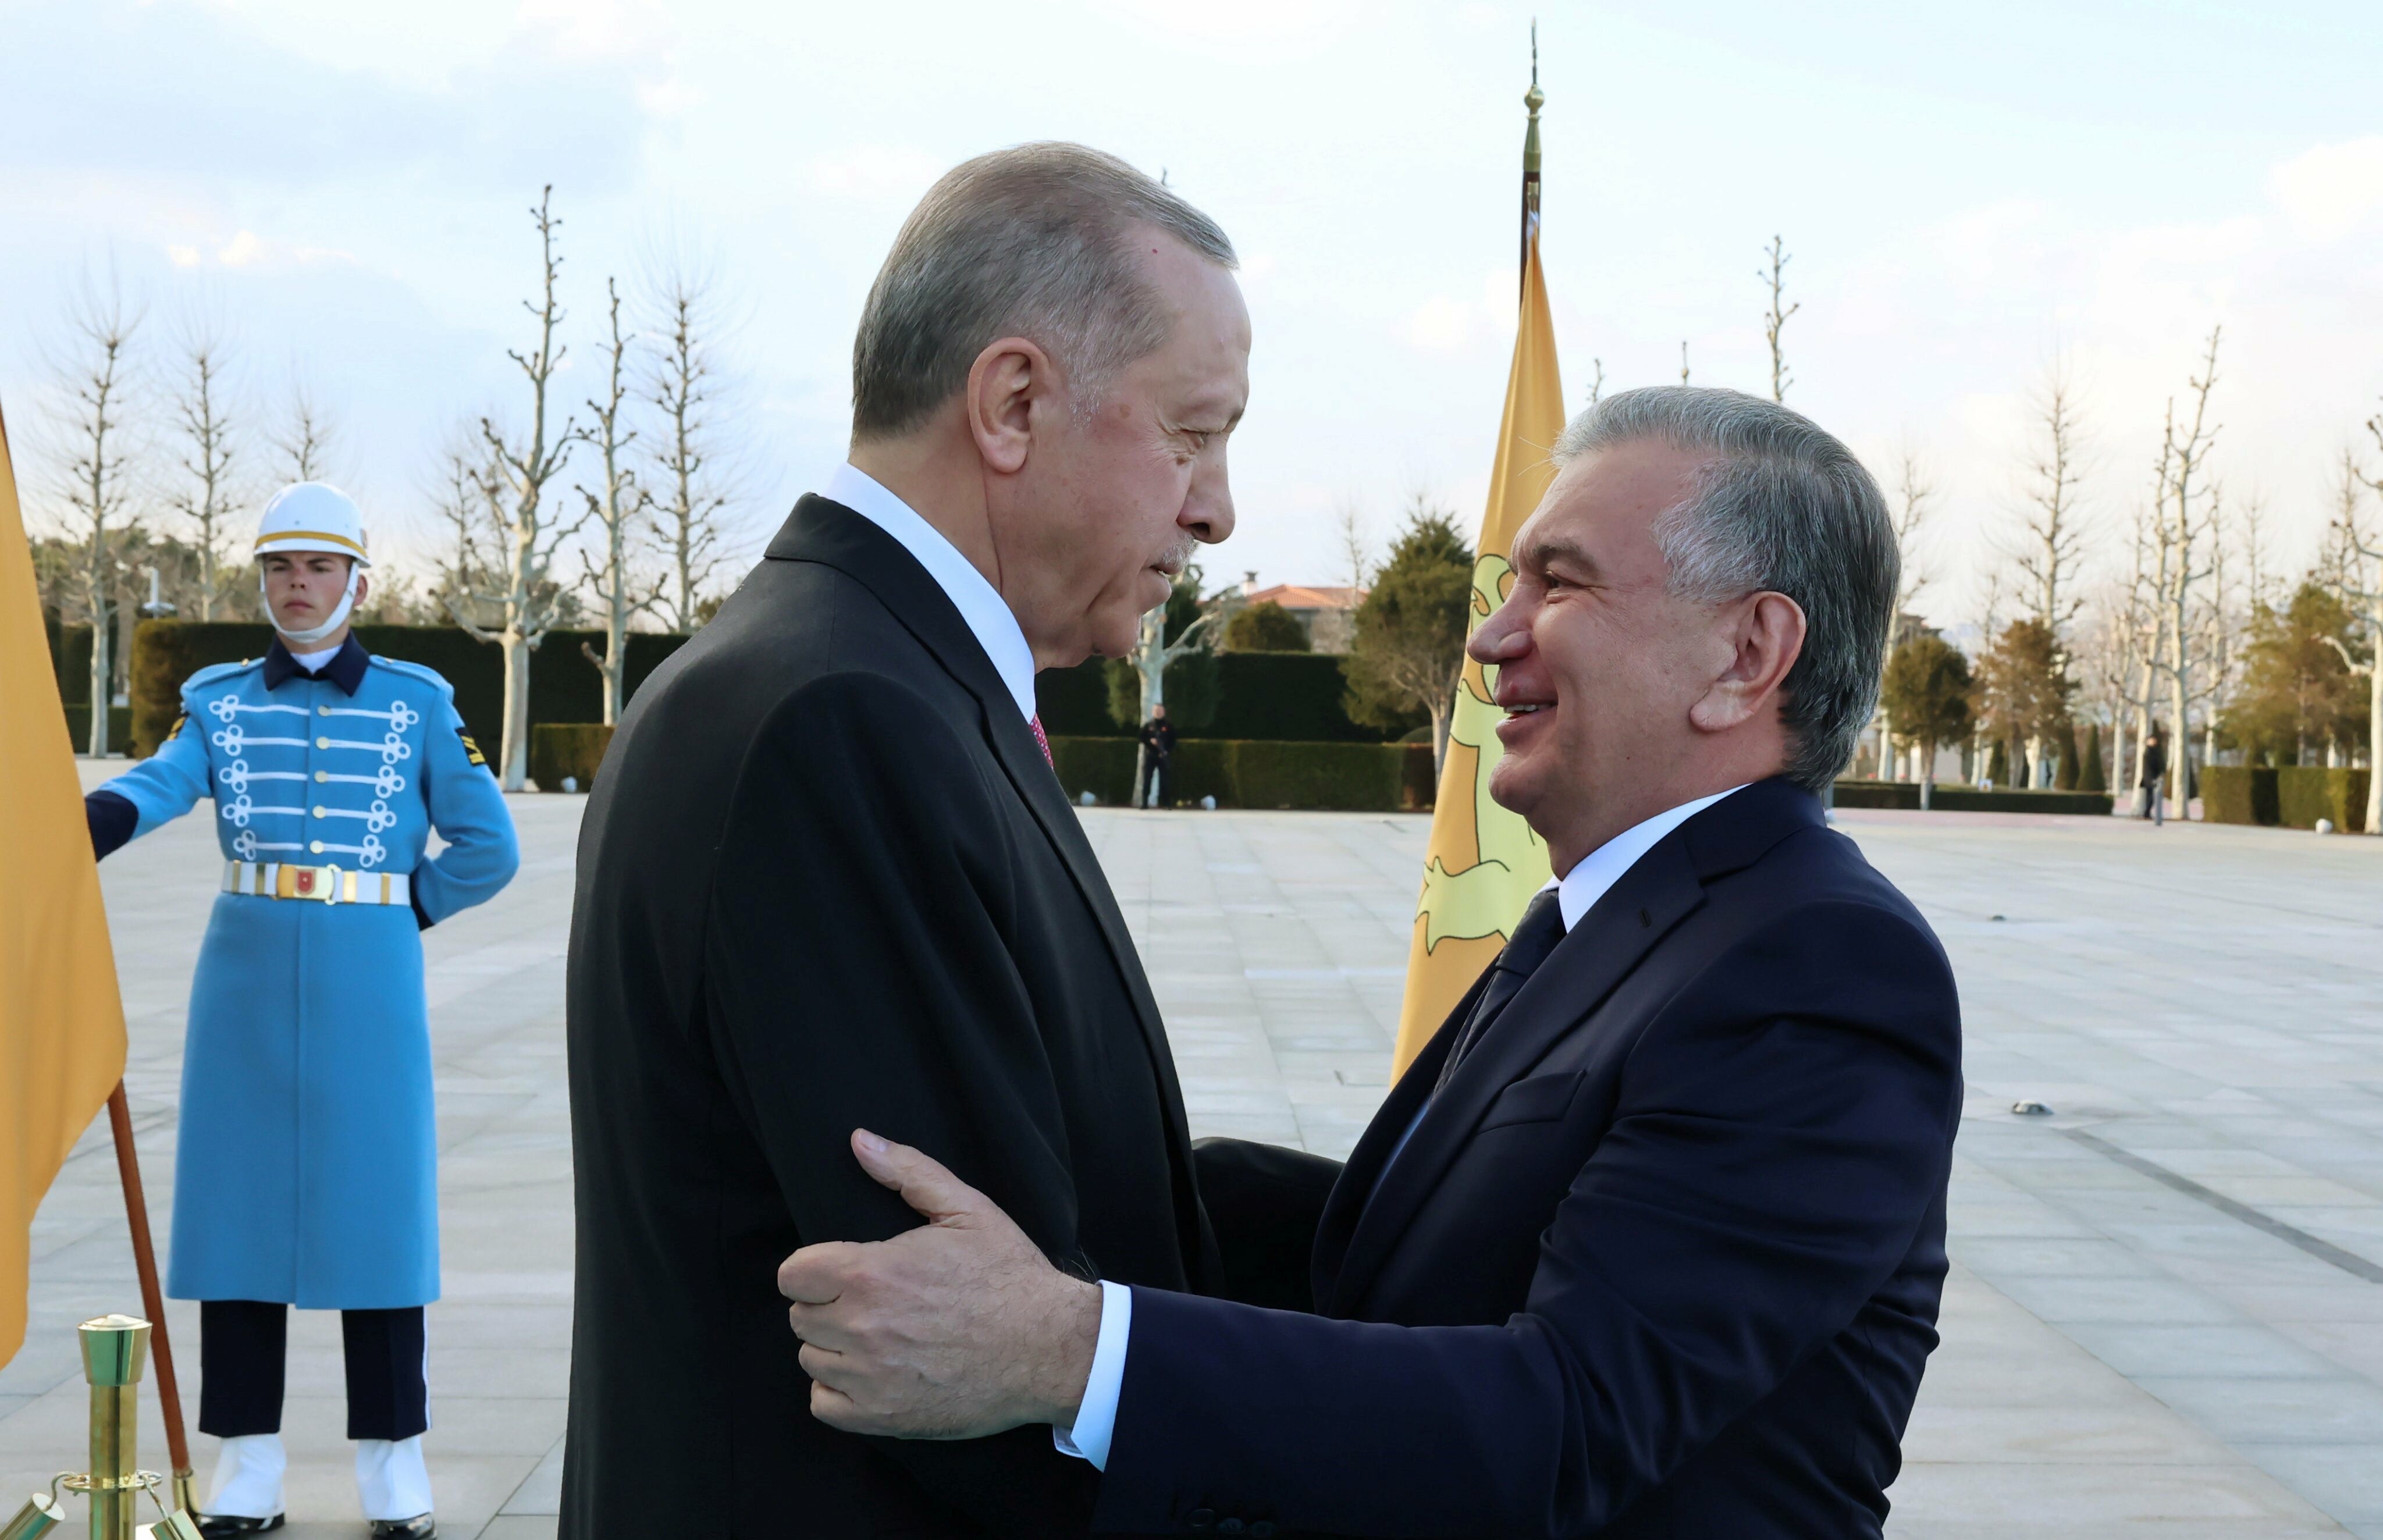 Мирзиёев поблагодарил Эрдогана за подаренный электромобиль Togg турецкого производства